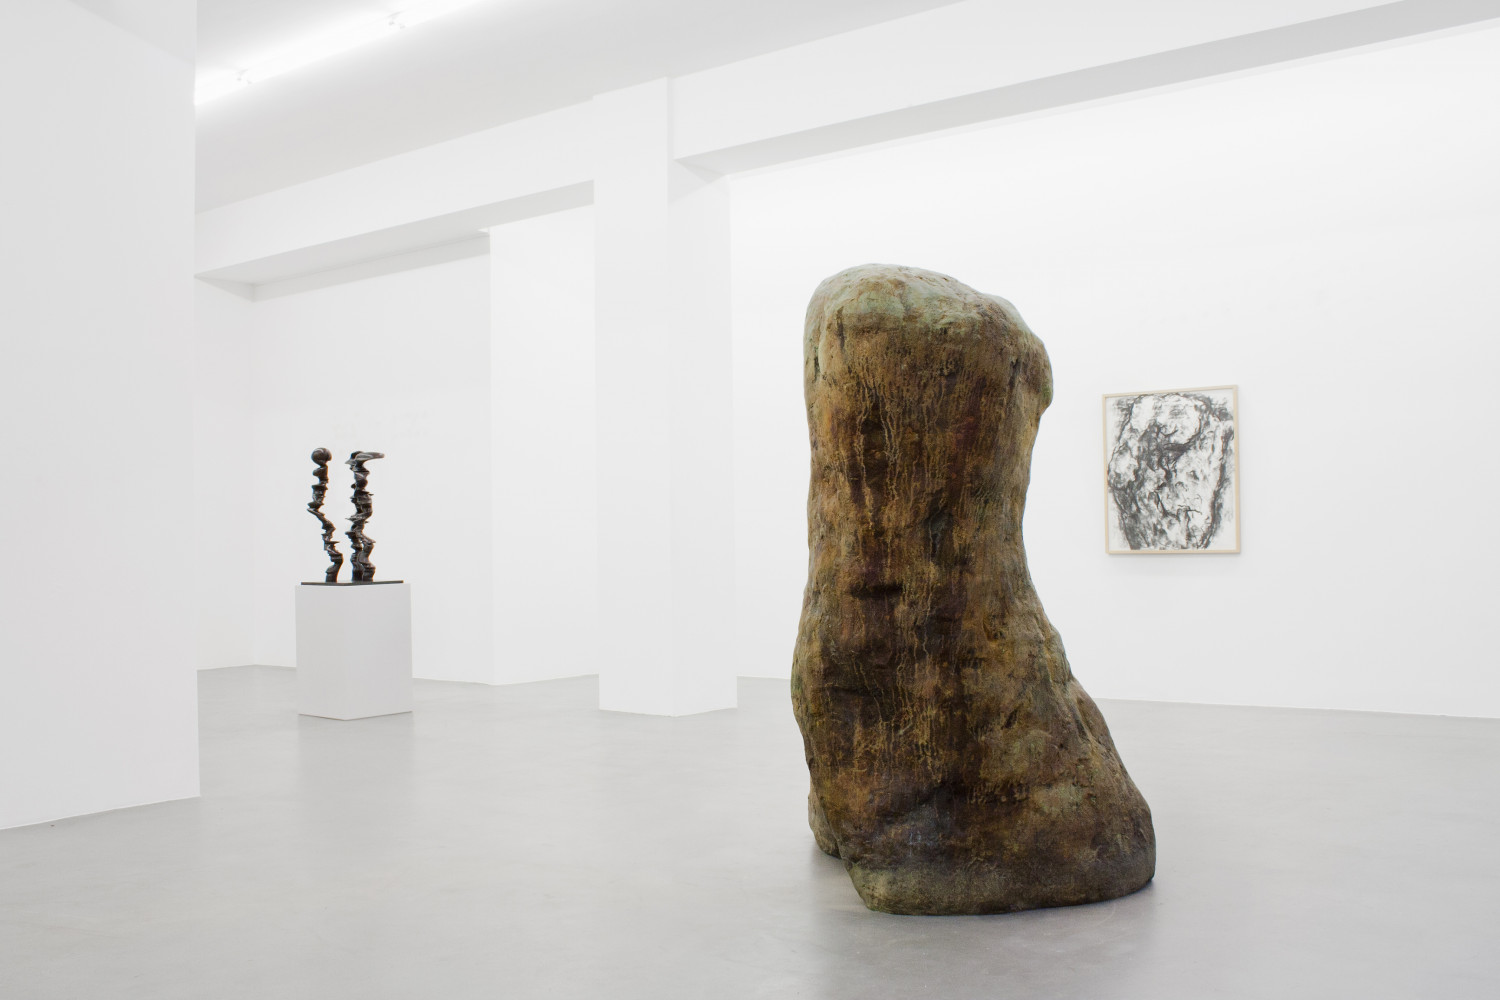 Tony Cragg, William Tucker, ‘Figure – Tony Cragg - Martin Disler - Medardo Rosso - William Tucker - Rebecca Warren’, Installation view, Buchmann Galerie, 2015–2016